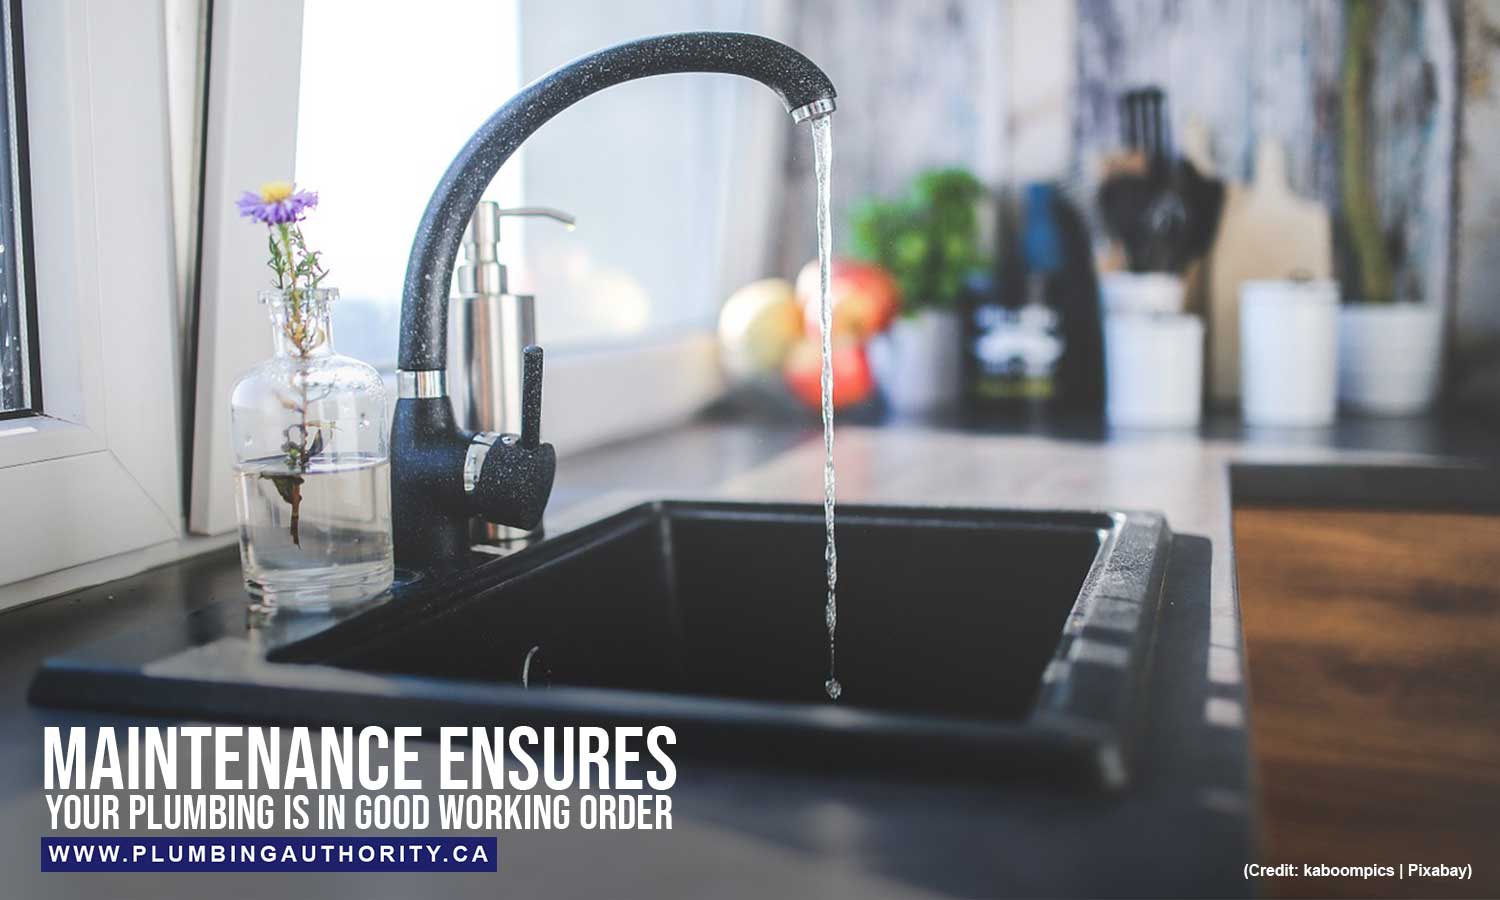 Maintenance ensures your plumbing